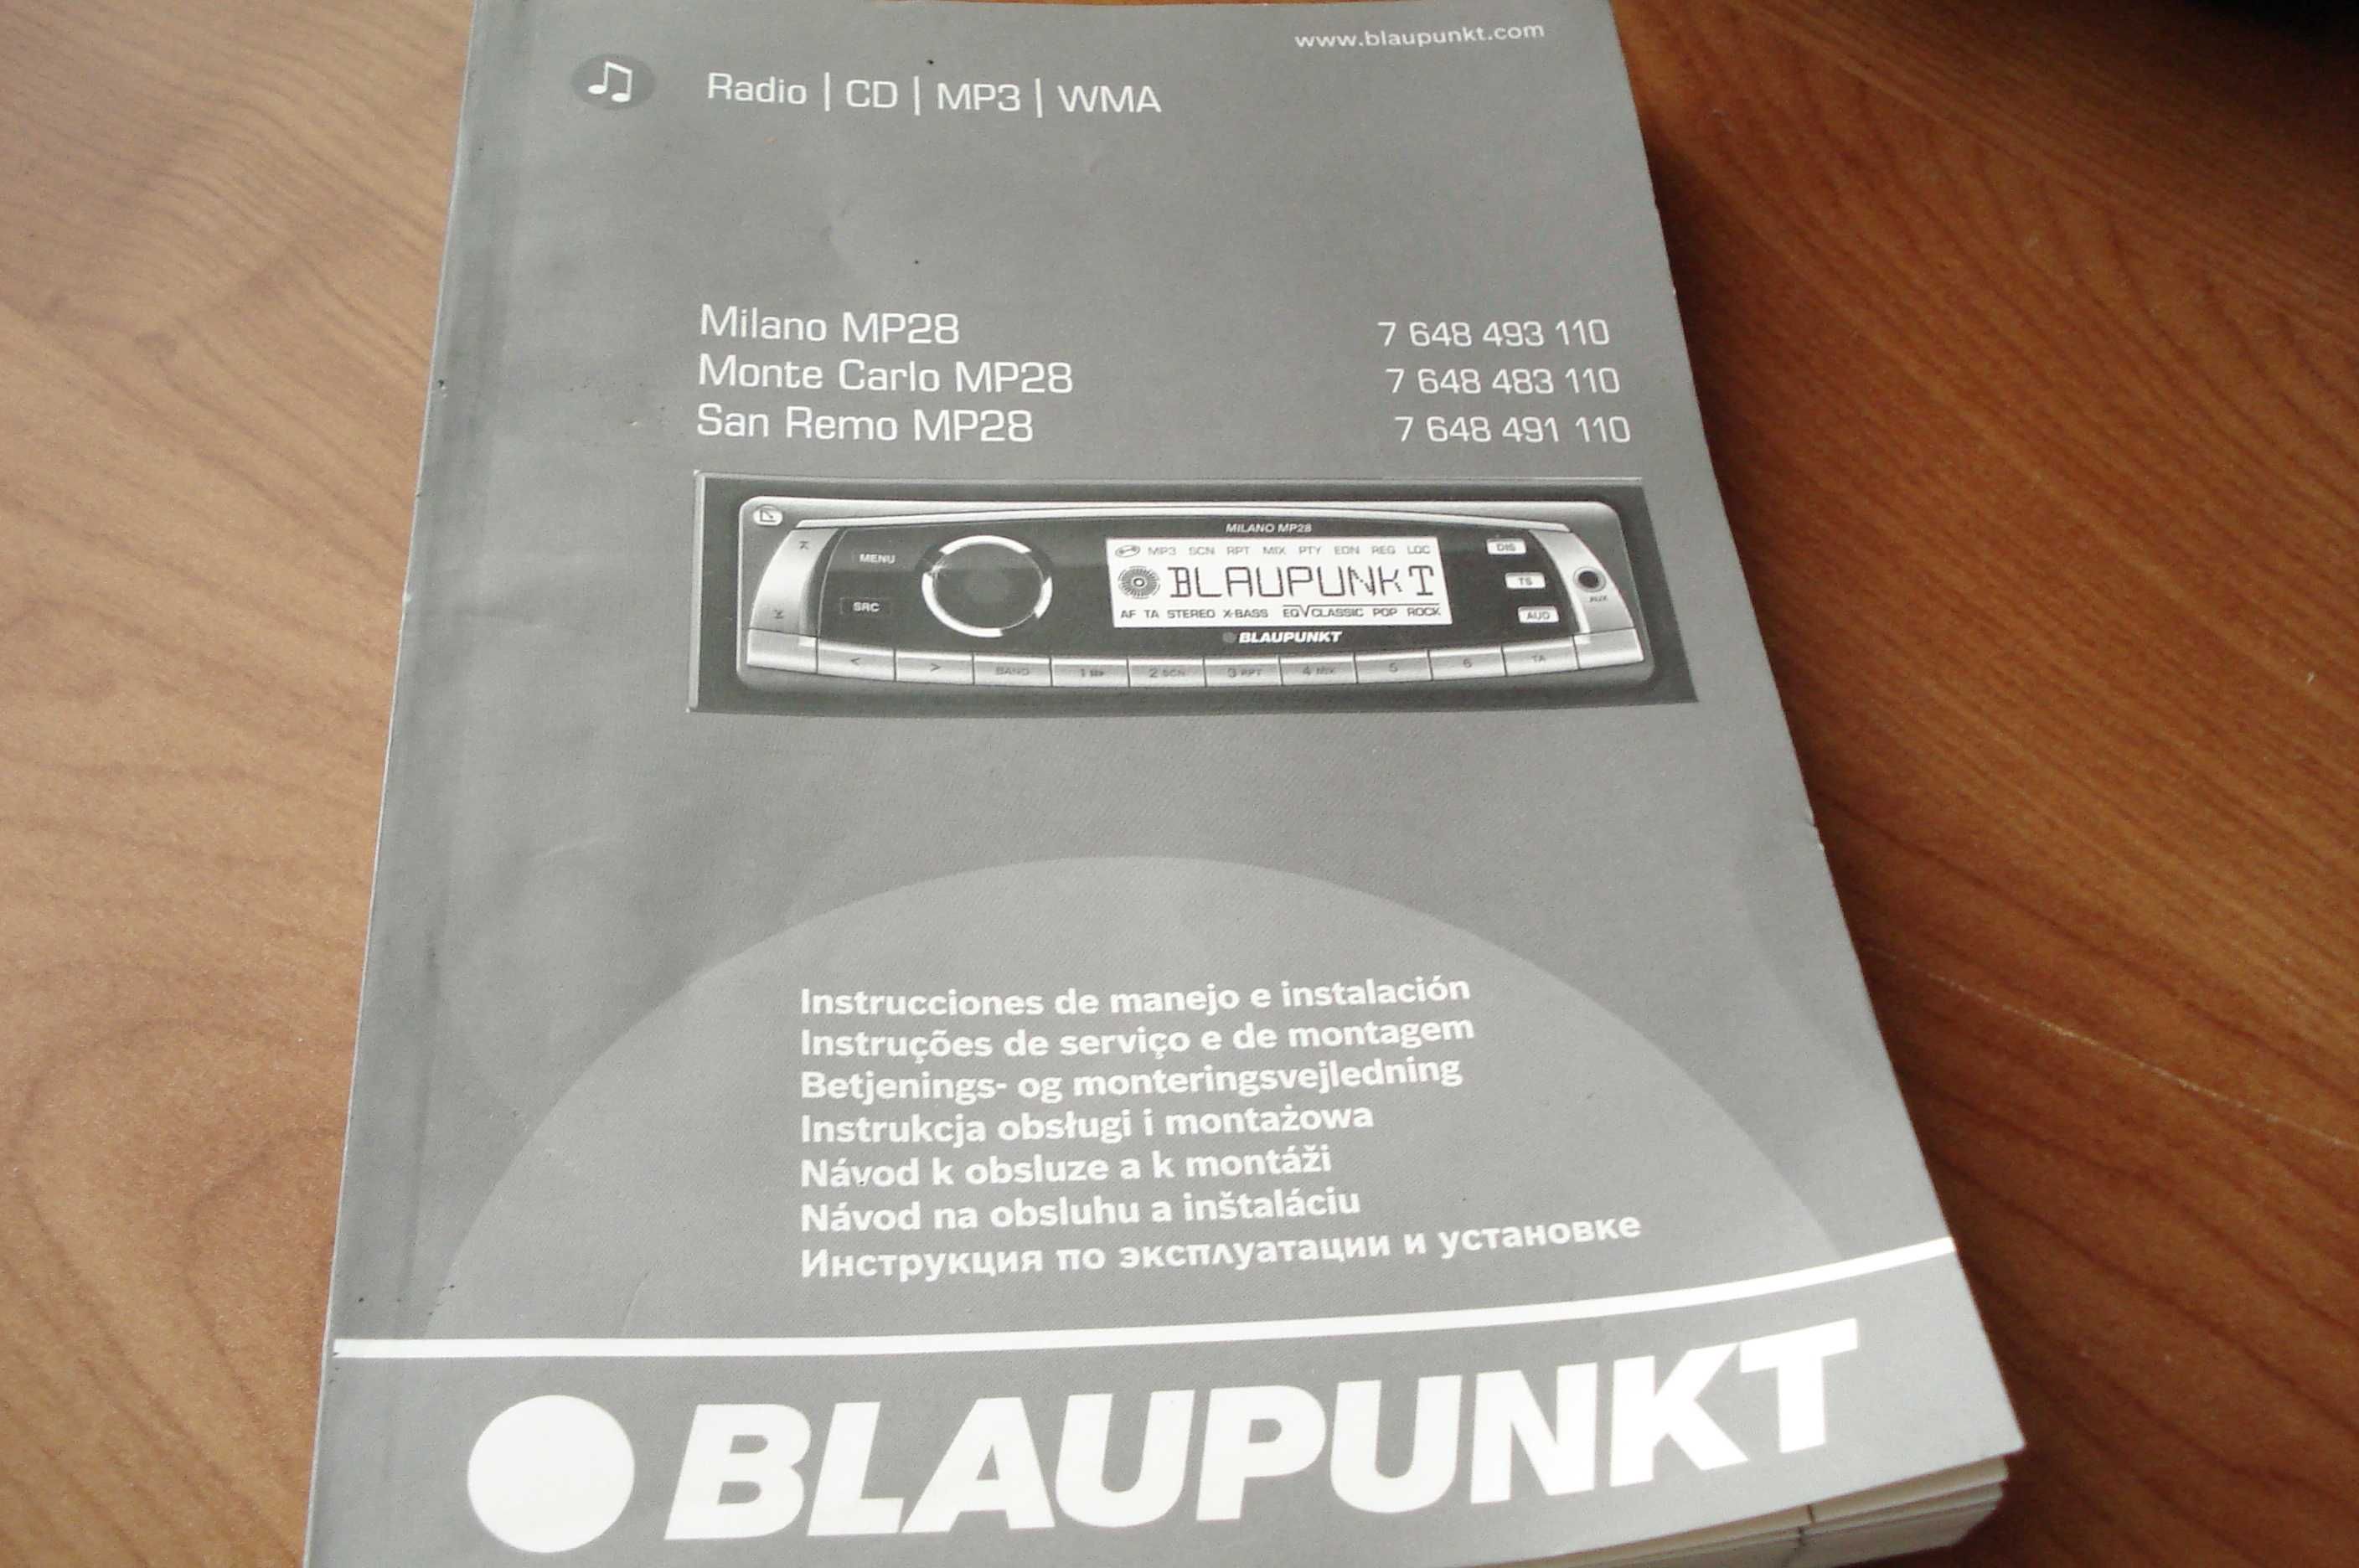 Instrukcja obsługi do radia samochodowego Blaupunkt - sprzedam